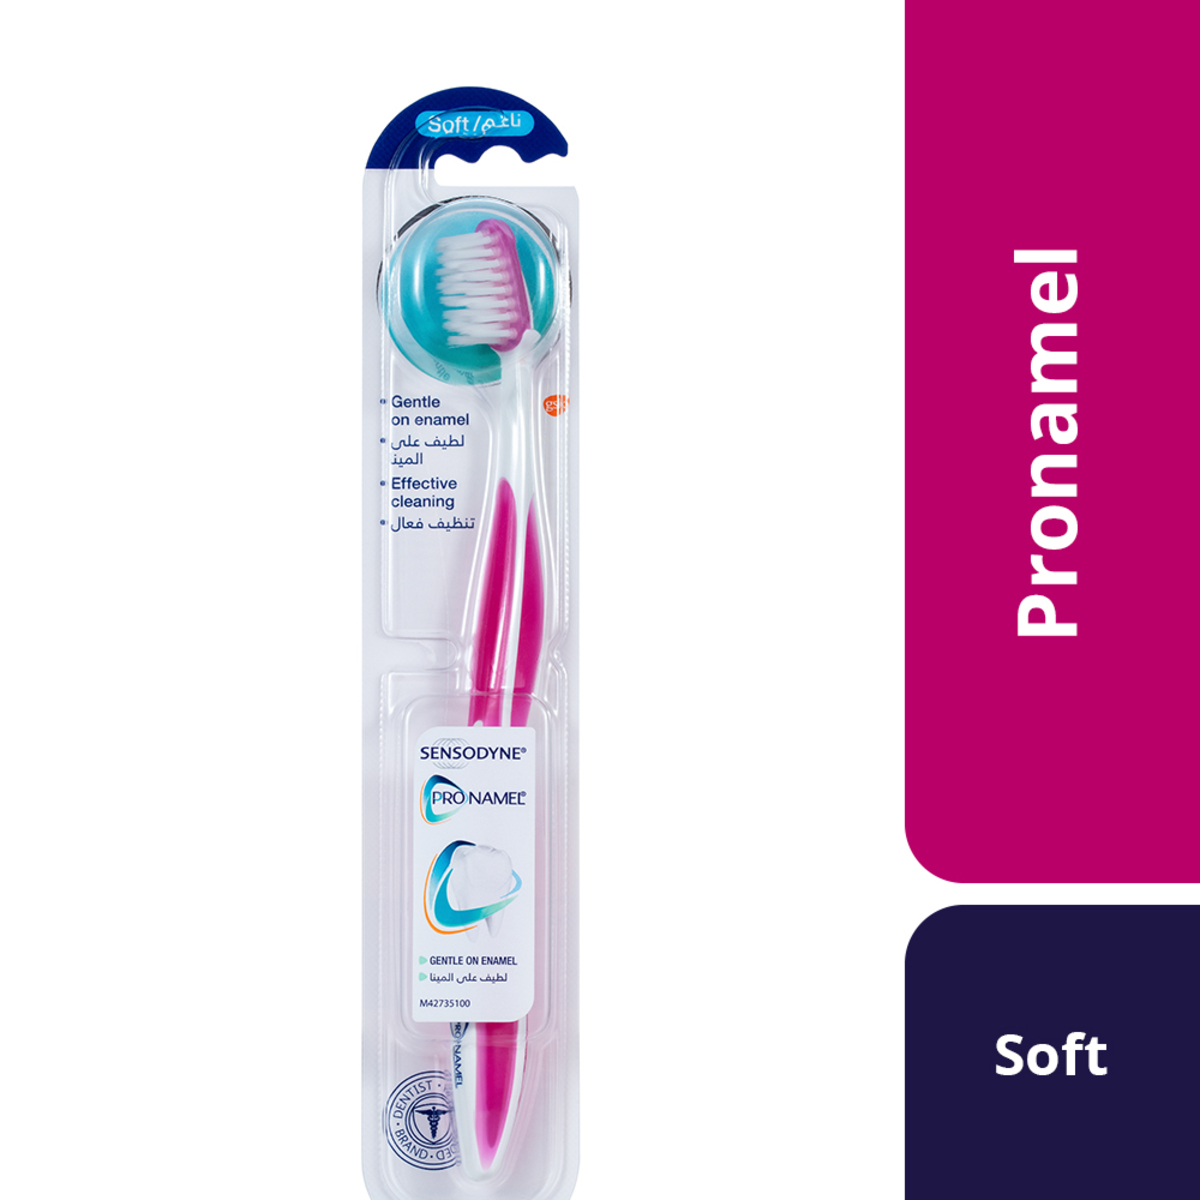 Sensodyne Toothbrush Pronamel�Soft 1pc